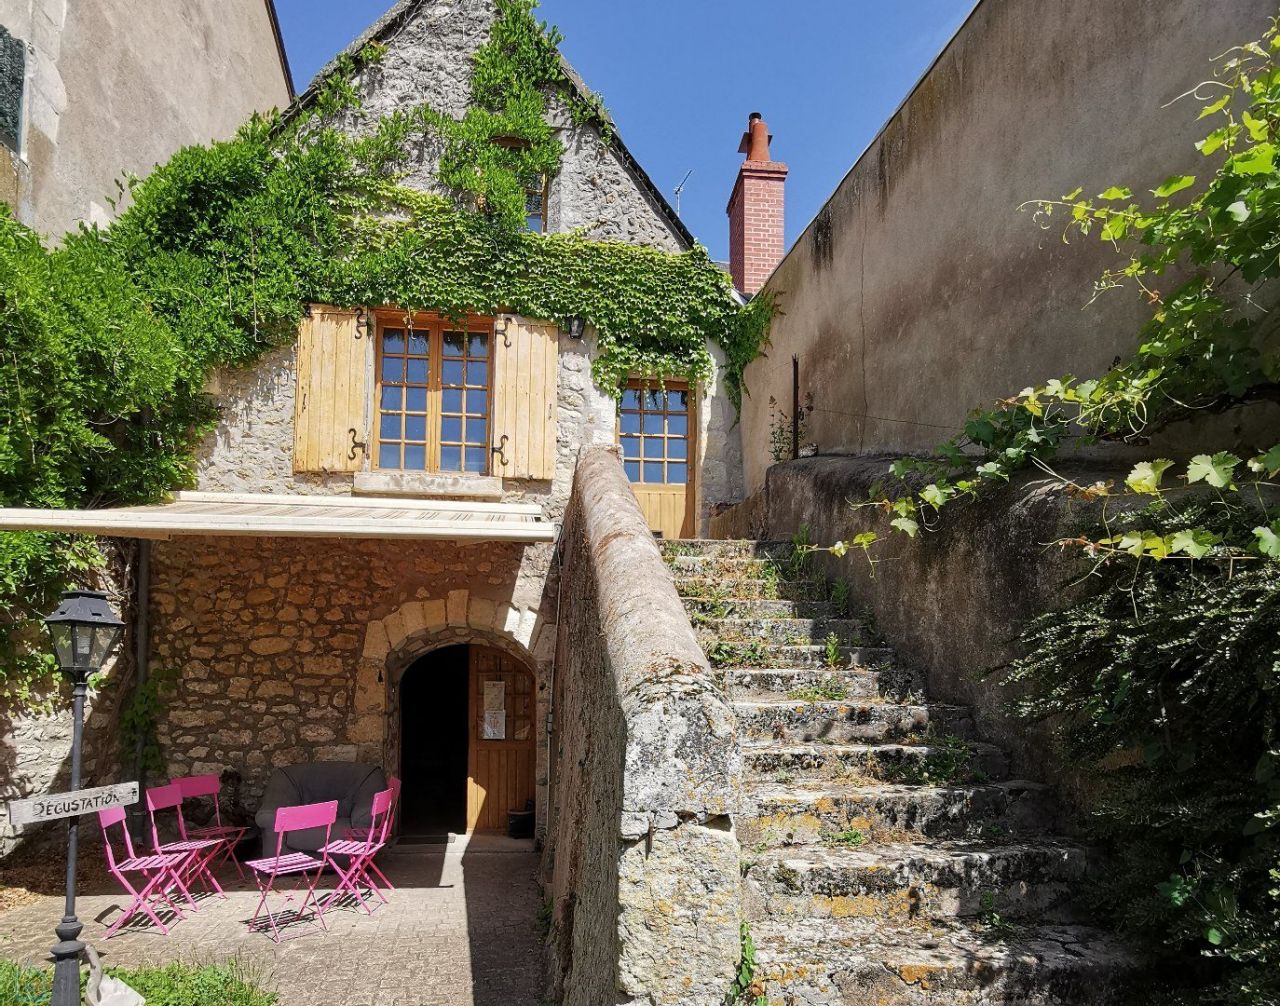 House in Centre-Val de Loire, France - picture 1